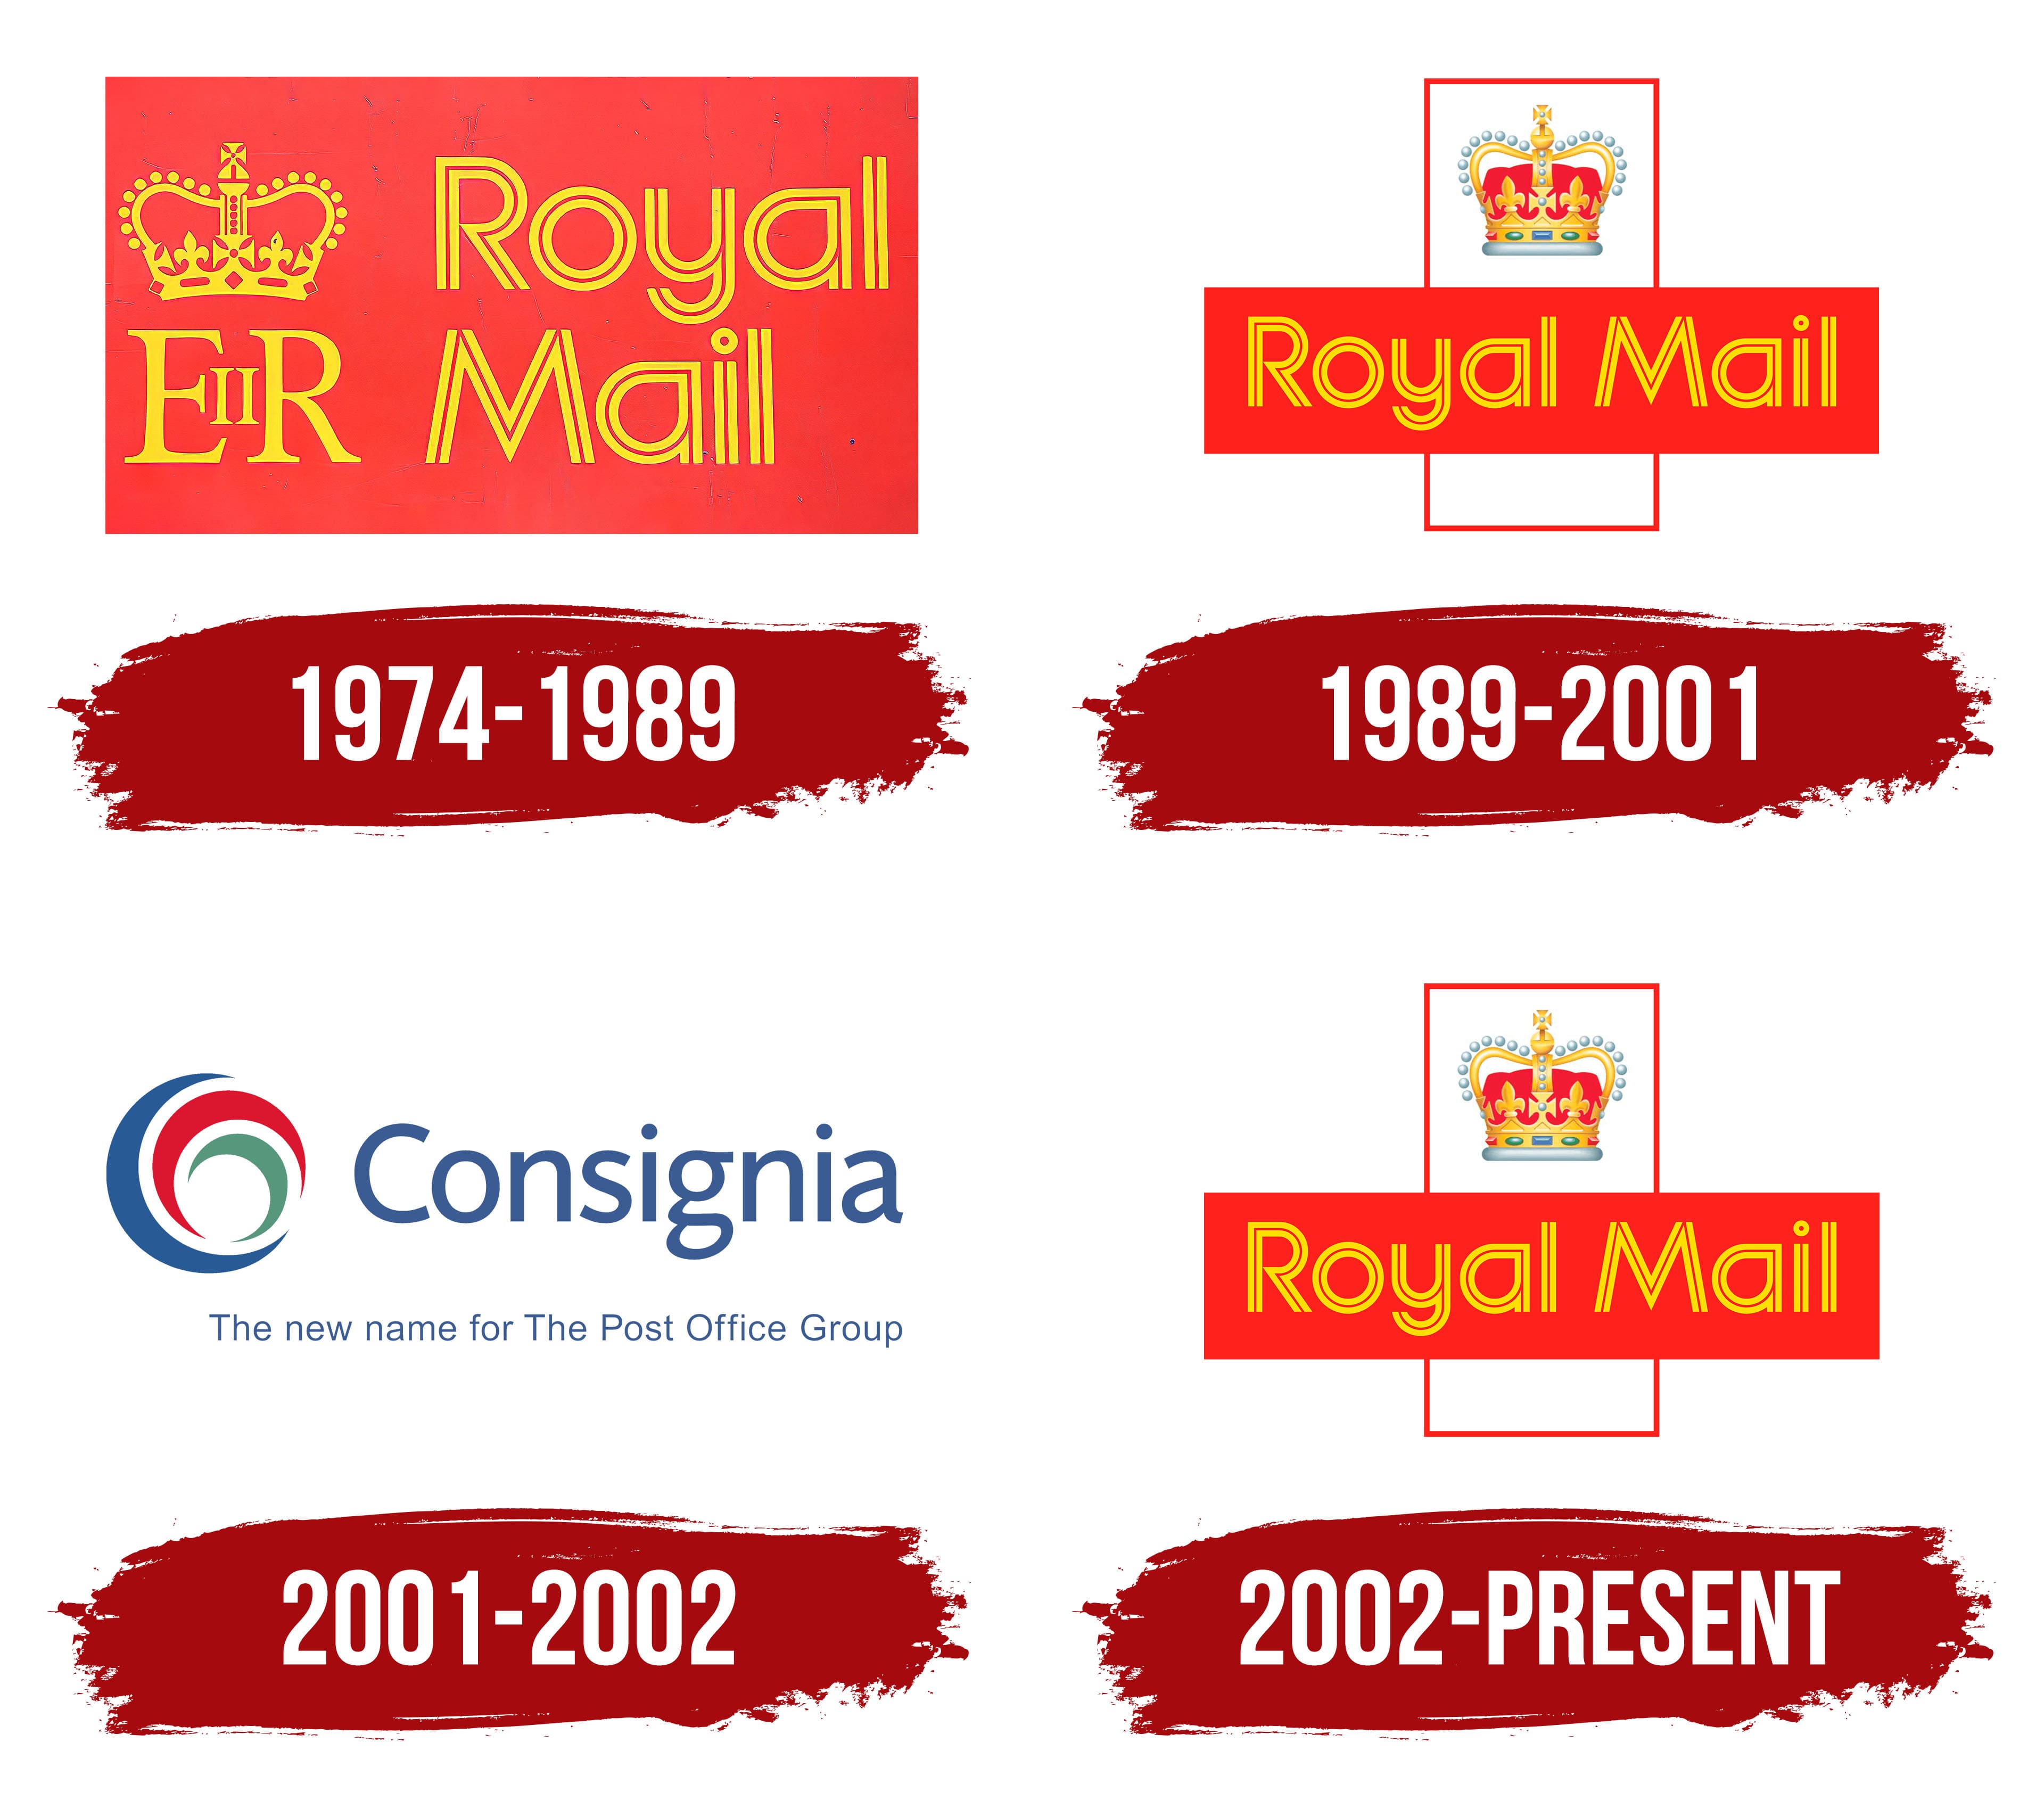 Royal Mail - Wikipedia